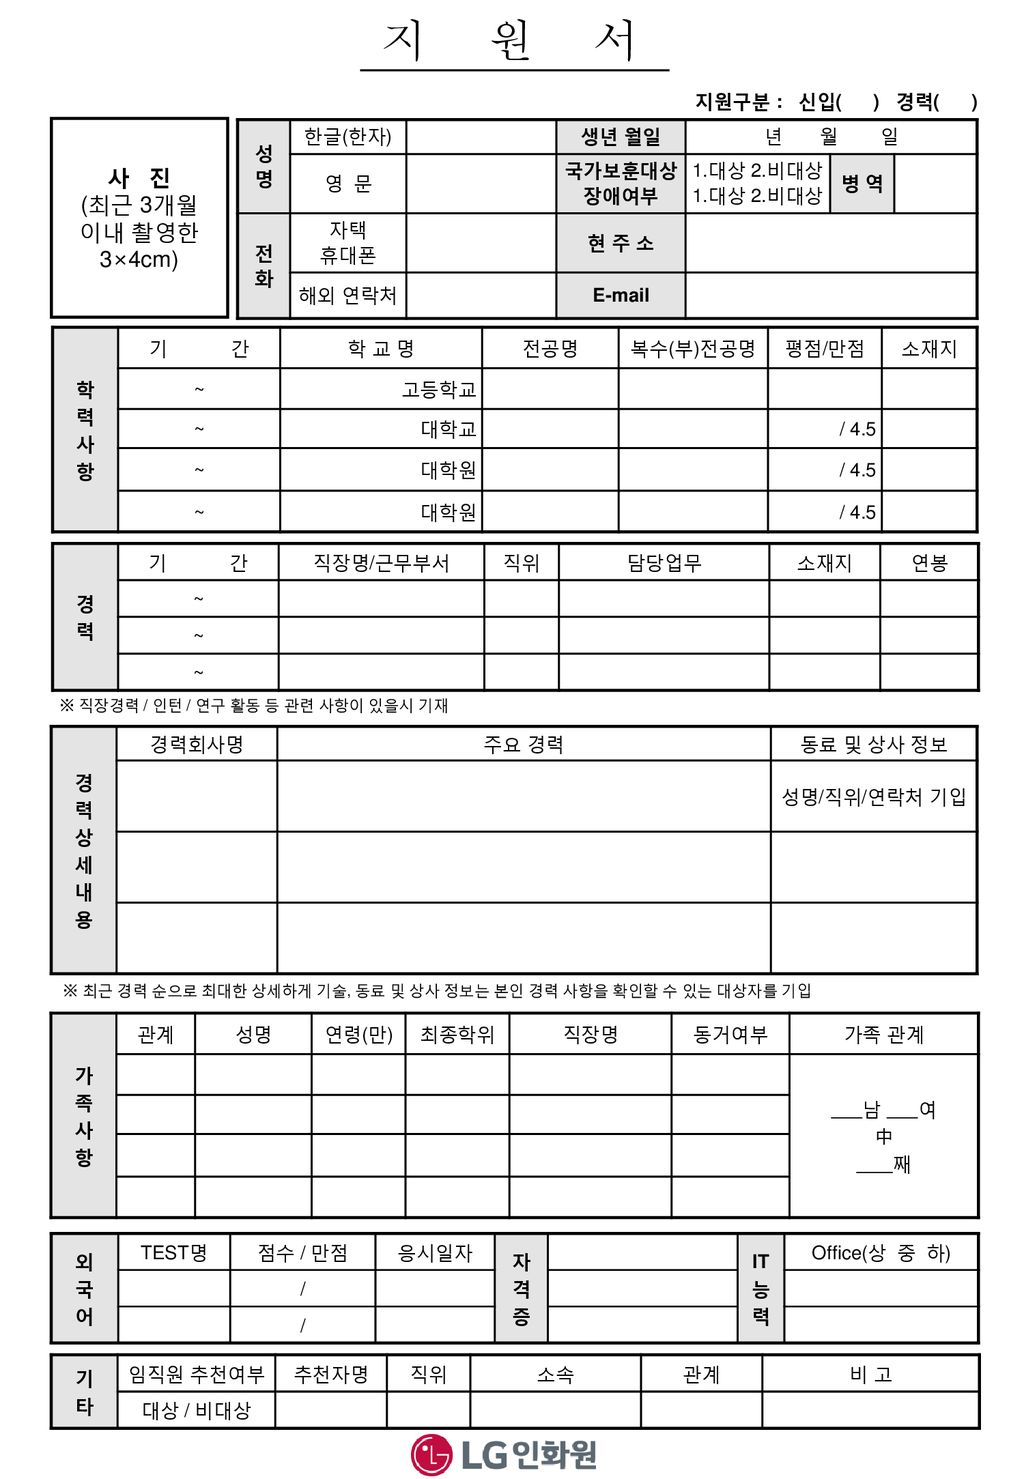 지 원 서 사 진 (최근 3개월 이내 촬영한 3×4cm) 지원구분 : 신입( ) 경력( ) 성 명 한글(한자) 생년 월일